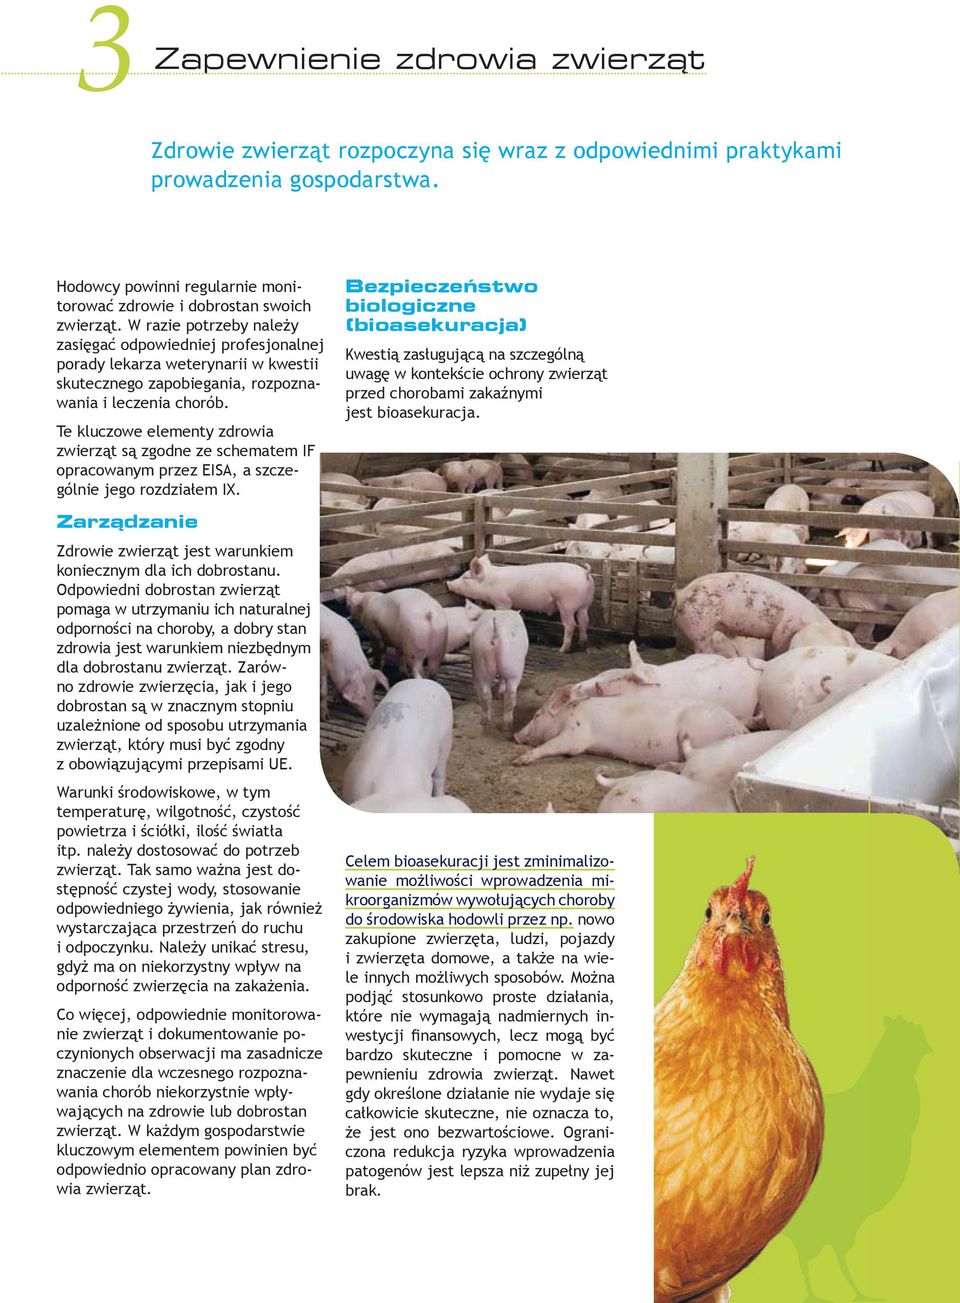 Te kluczowe elementy zdrowia zwierząt są zgodne ze schematem IF opracowanym przez EISA, a szczególnie jego rozdziałem IX. Zarządzanie Zdrowie zwierząt jest warunkiem koniecznym dla ich dobrostanu.